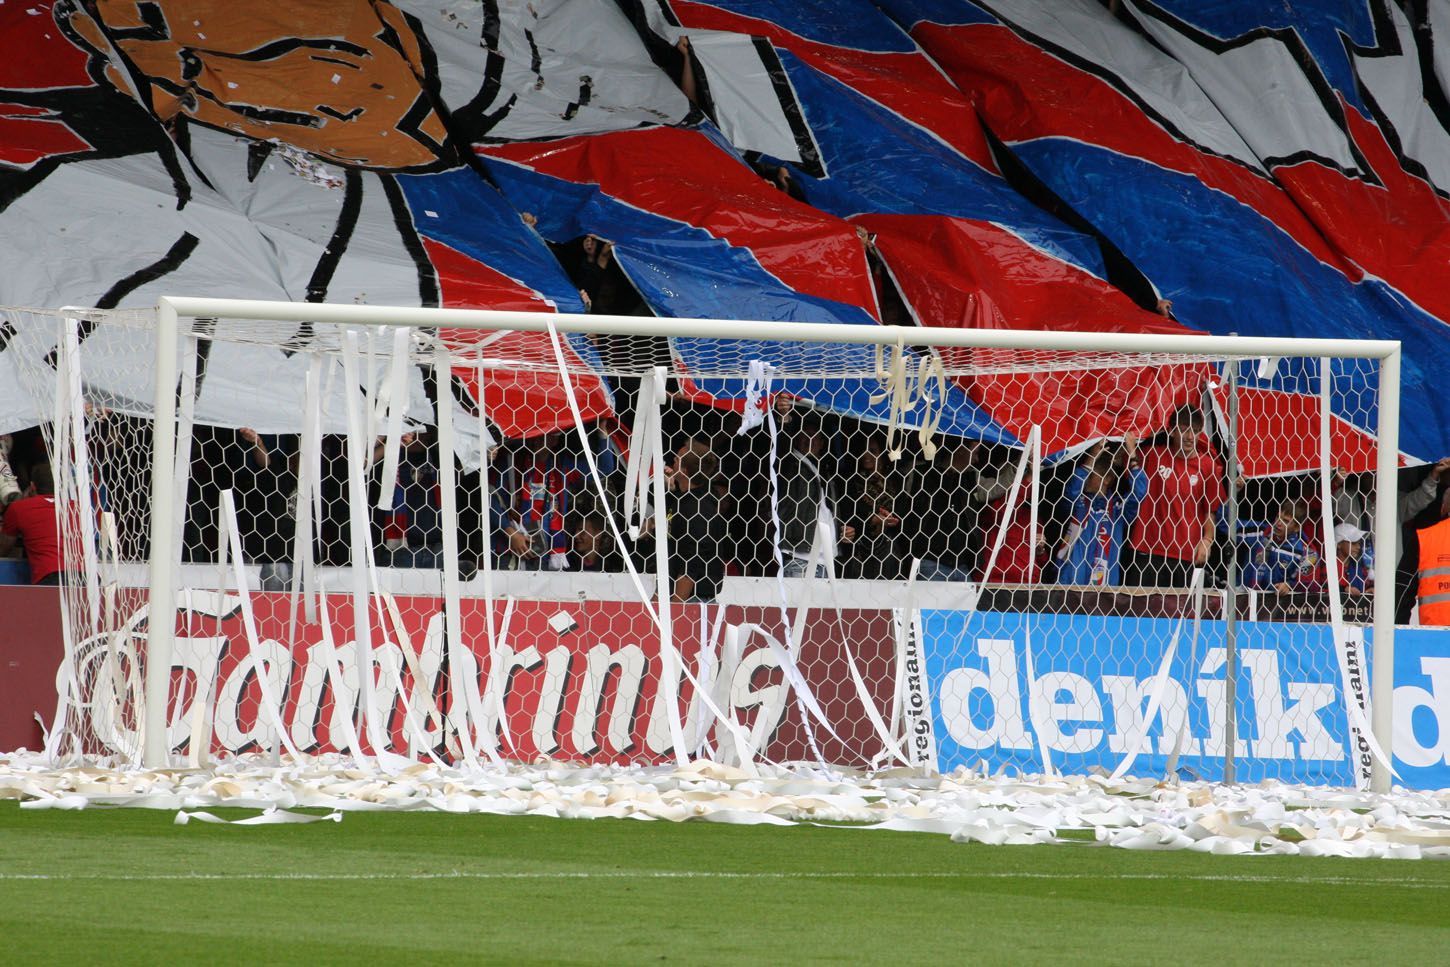 Fotbaloví fanoušci Plzně slaví vítězství v utkání se Spartou Praha v utkání sedmého kola Gambrinus ligy 2012/13.